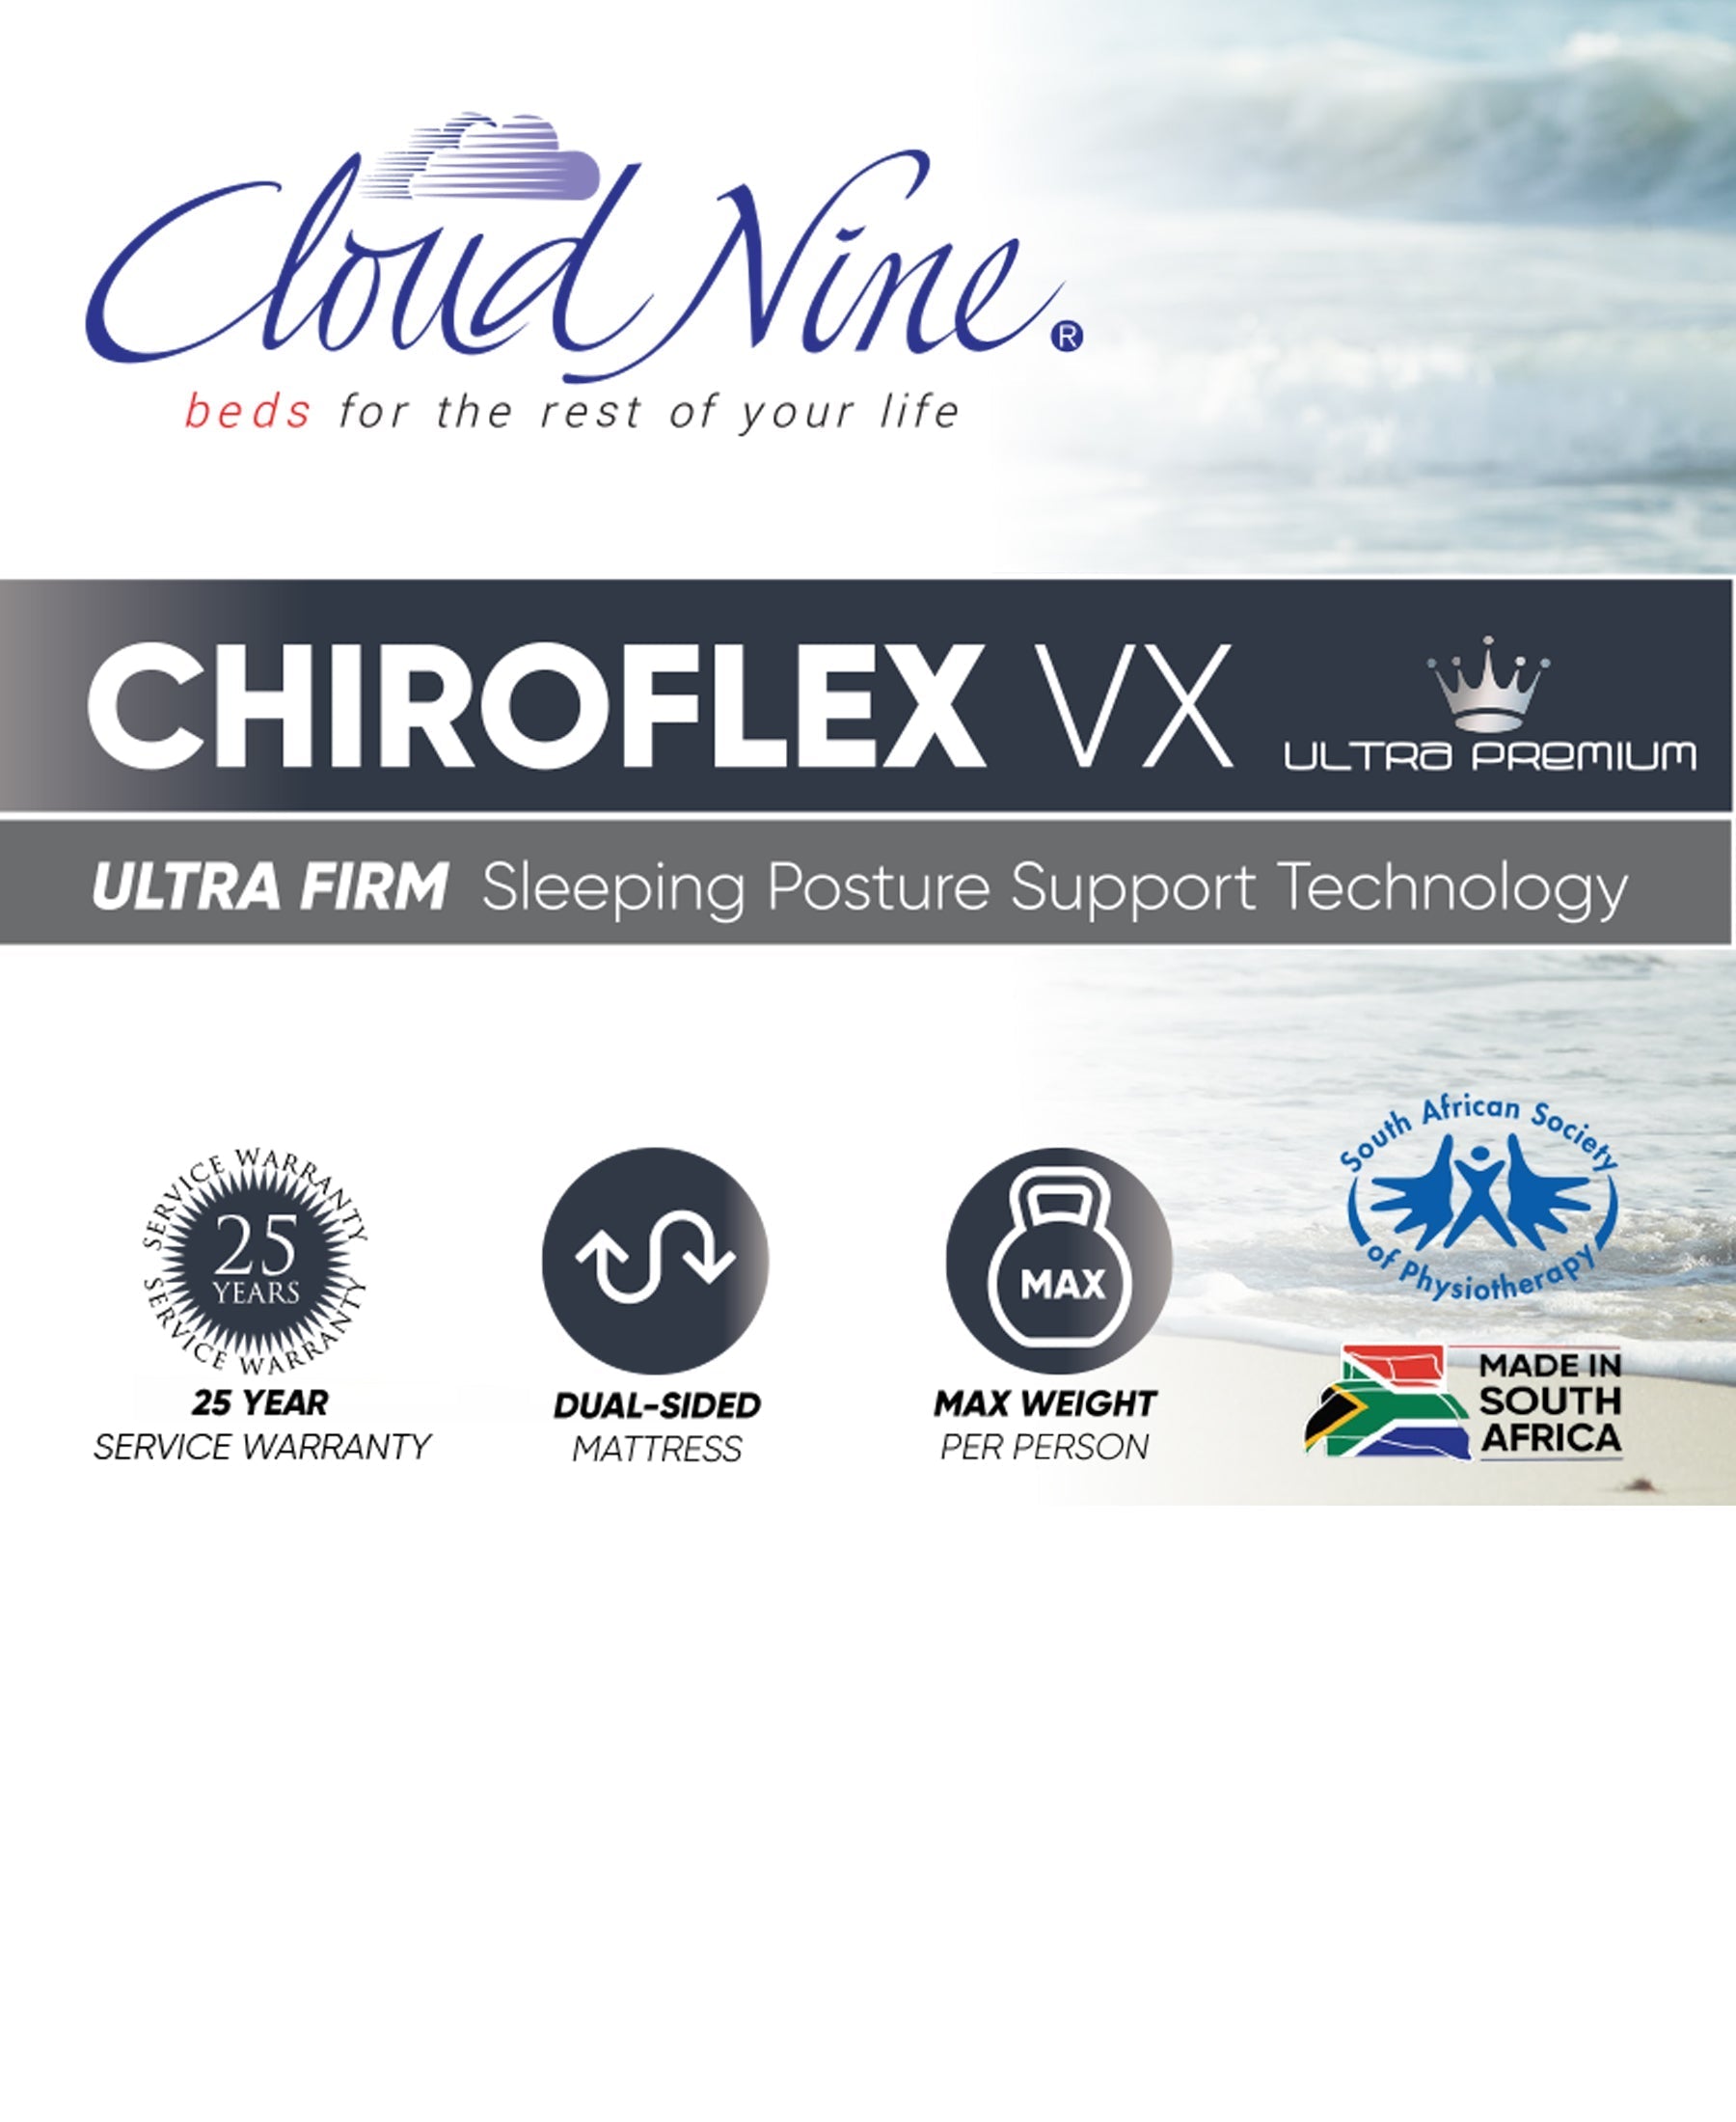 Cloud Nine Chiroflex VX Bed Queen